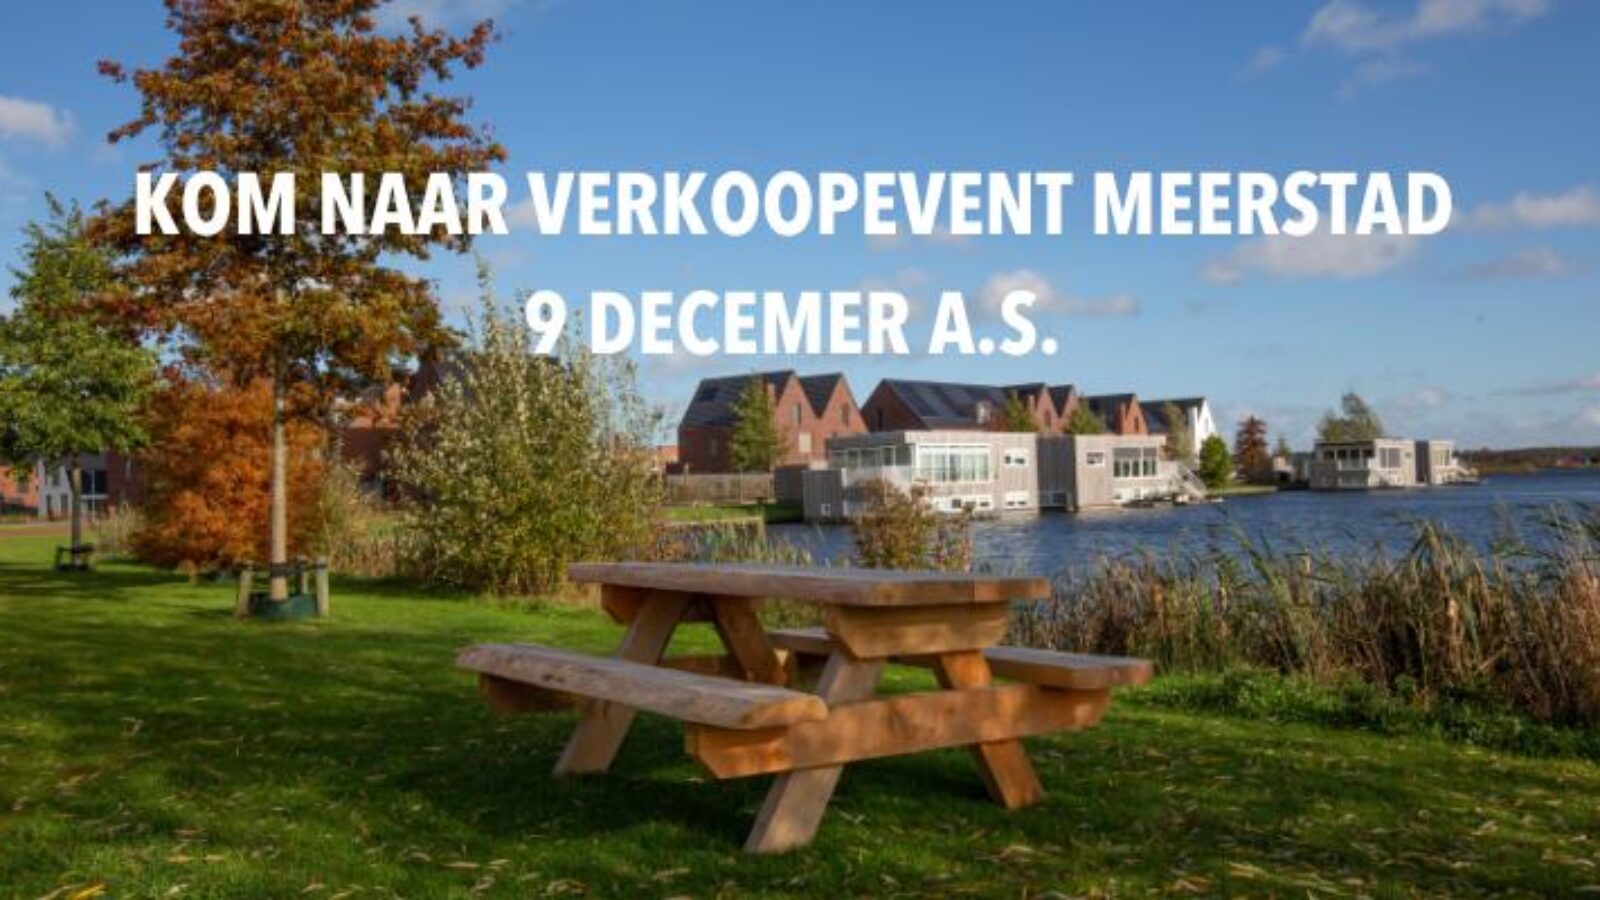 Kom naar verkoopevent Meerstad op zaterdag 9 december a.s.